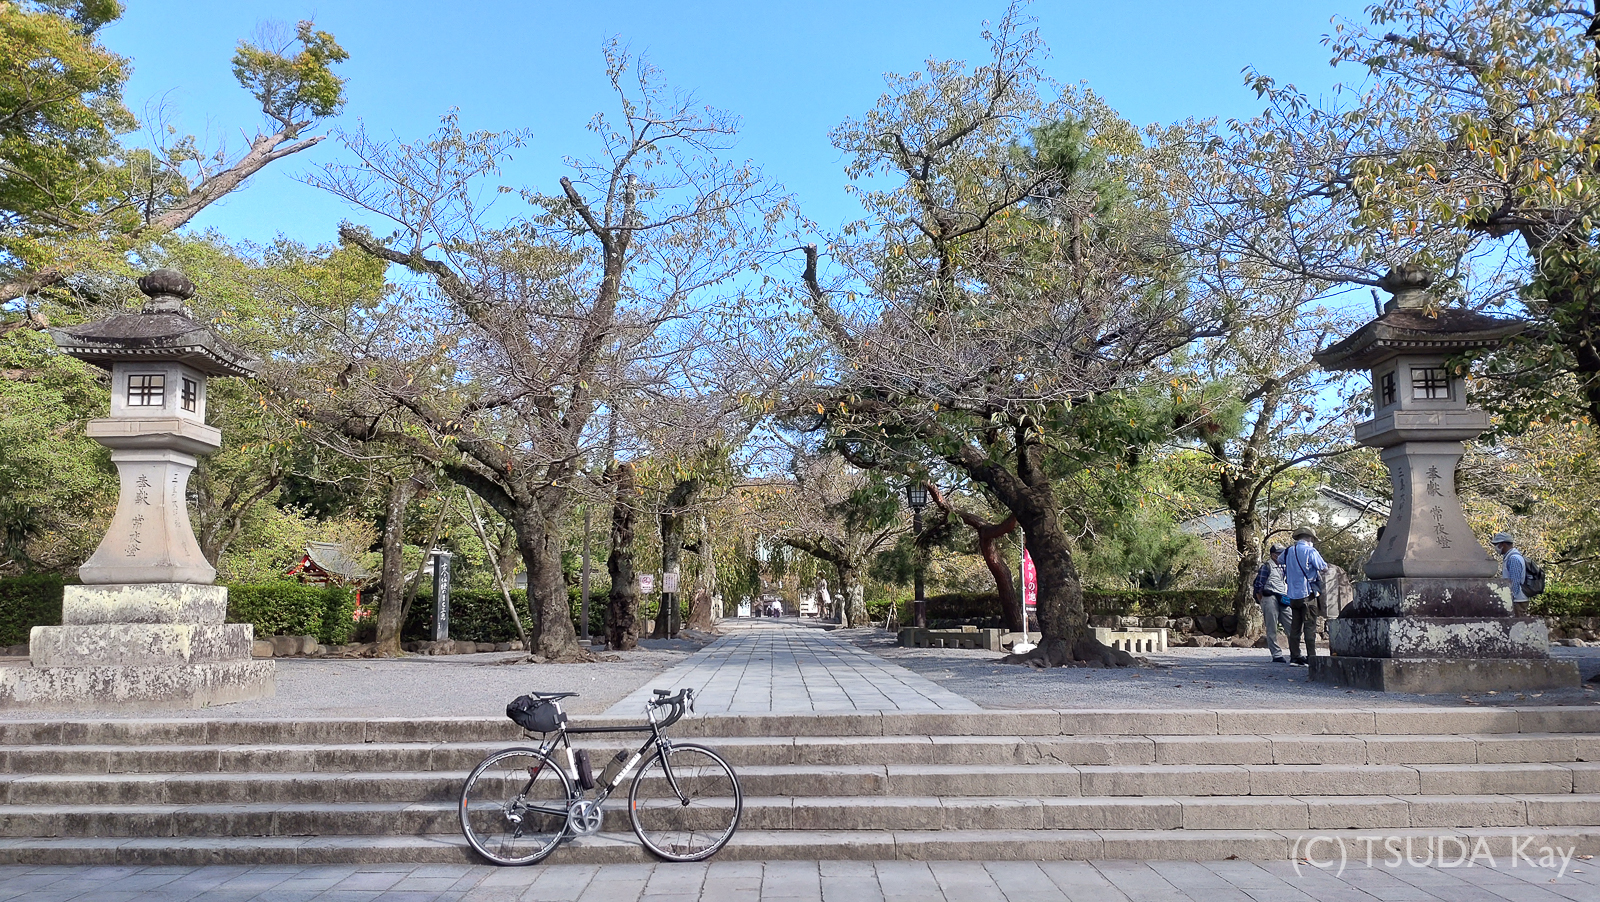 I cycled from mishima to shizuoka 43